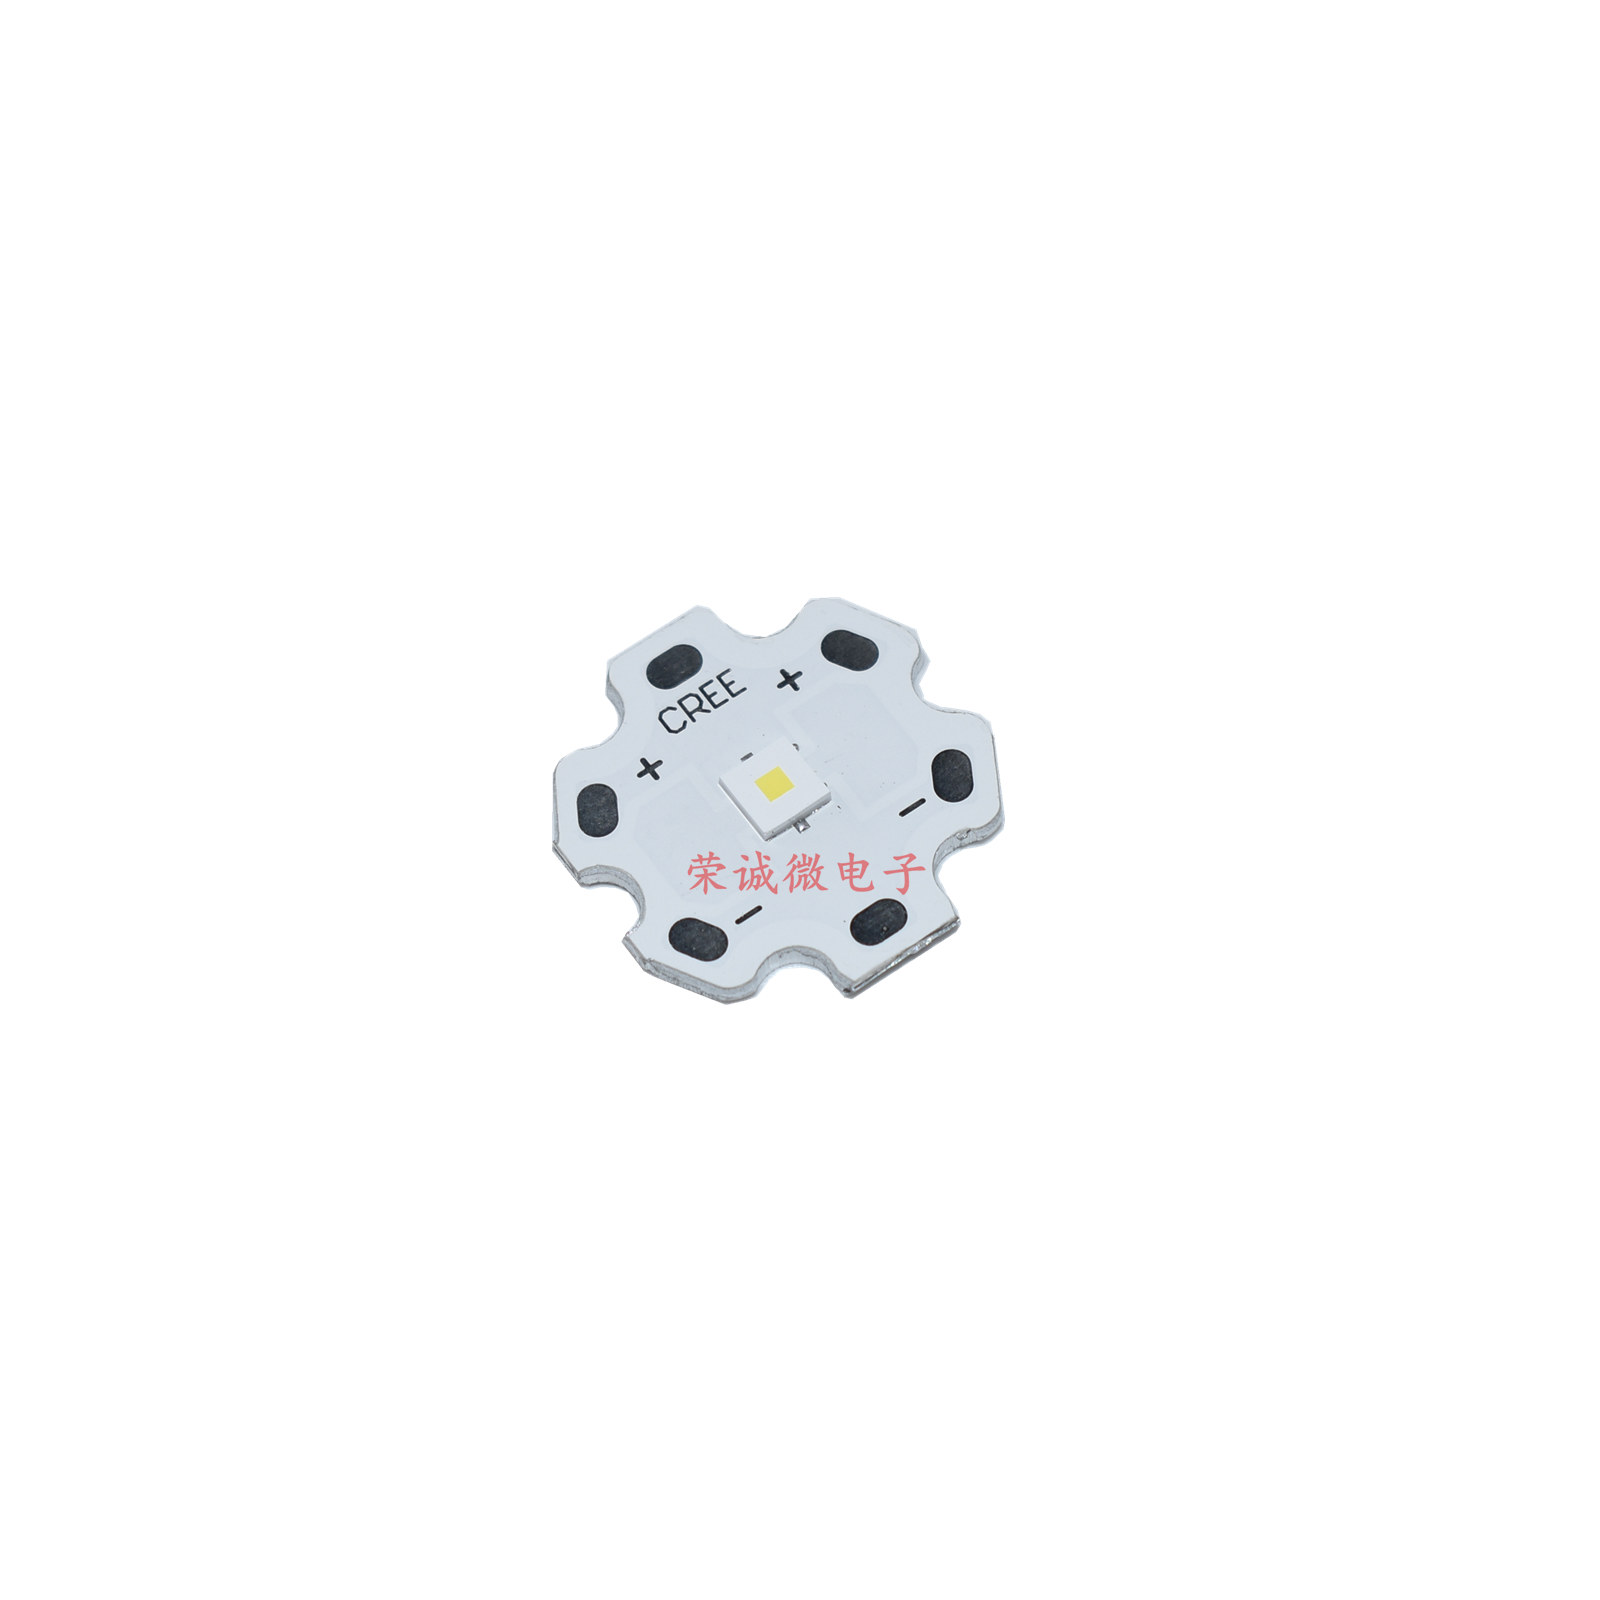 3535平面HI大功率LED灯珠聚光激光远射强光手电筒DIY灯芯白色高亮 - 图1